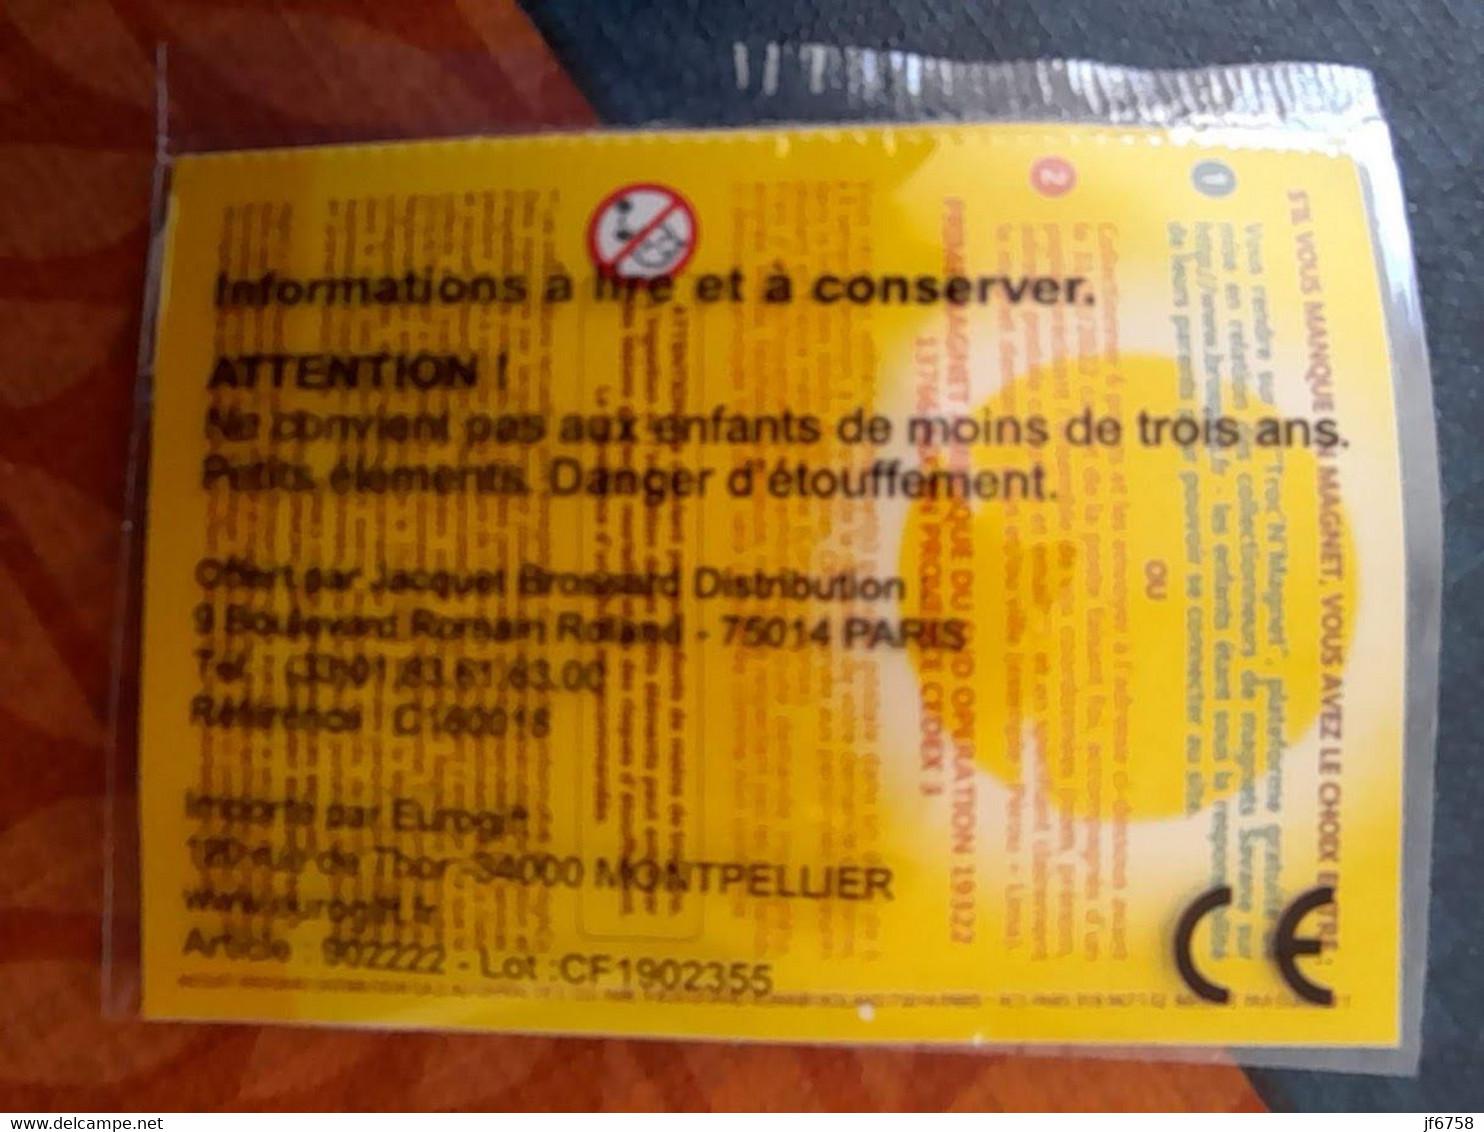 Magnet Savane Brossard Amérique Du Sud Colombie  Dans L'emballage D'origine - Publicidad